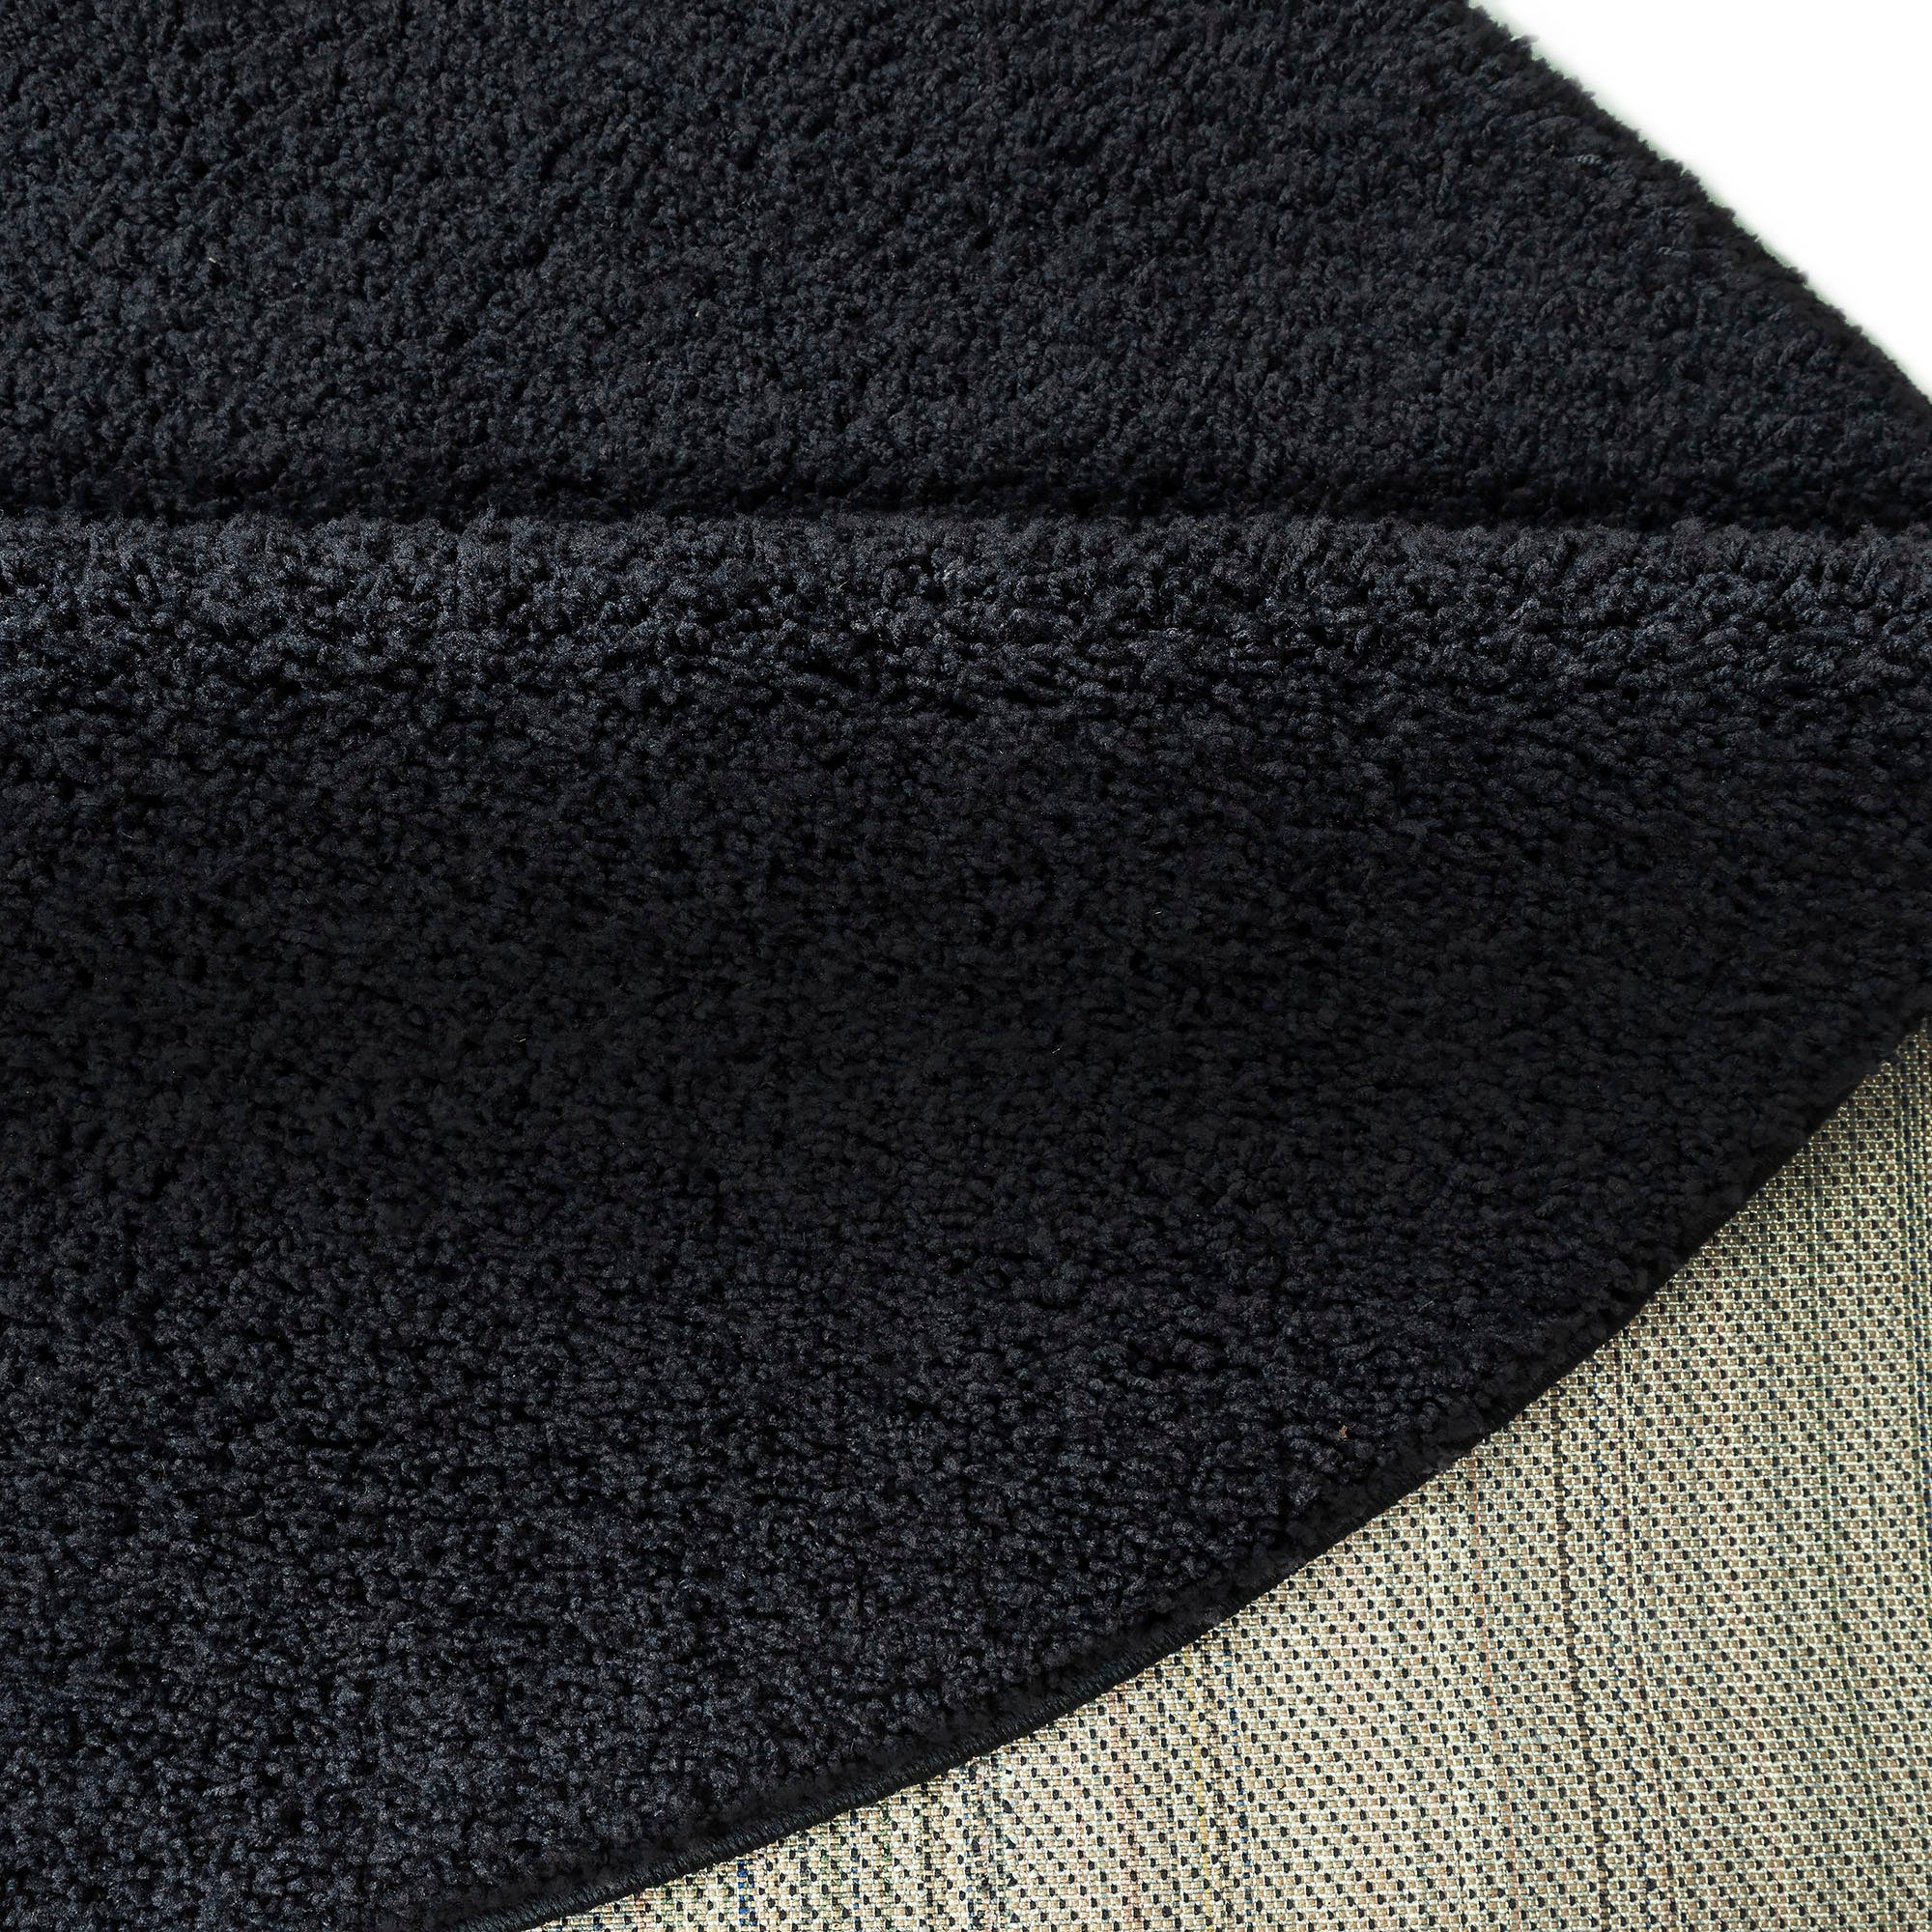 Hochflor-Teppich besonders rund, durch Höhe: my Vince, extra home, schwarz weich 31 mm, Mikrofaser, flauschig